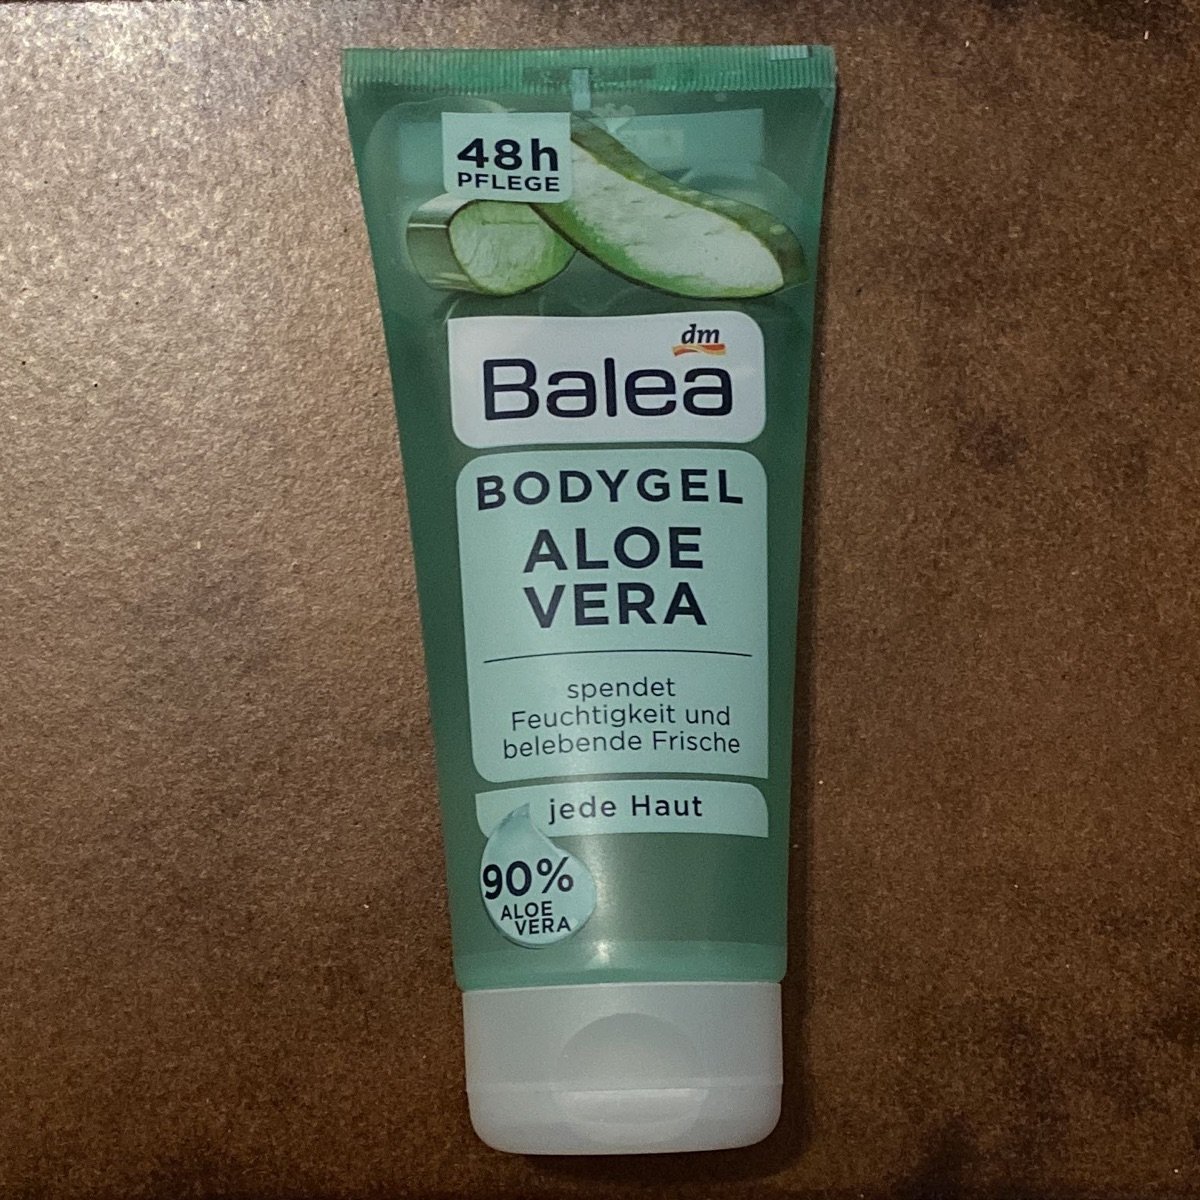 Dm balea Body Gel Aloe Vera Review | abillion